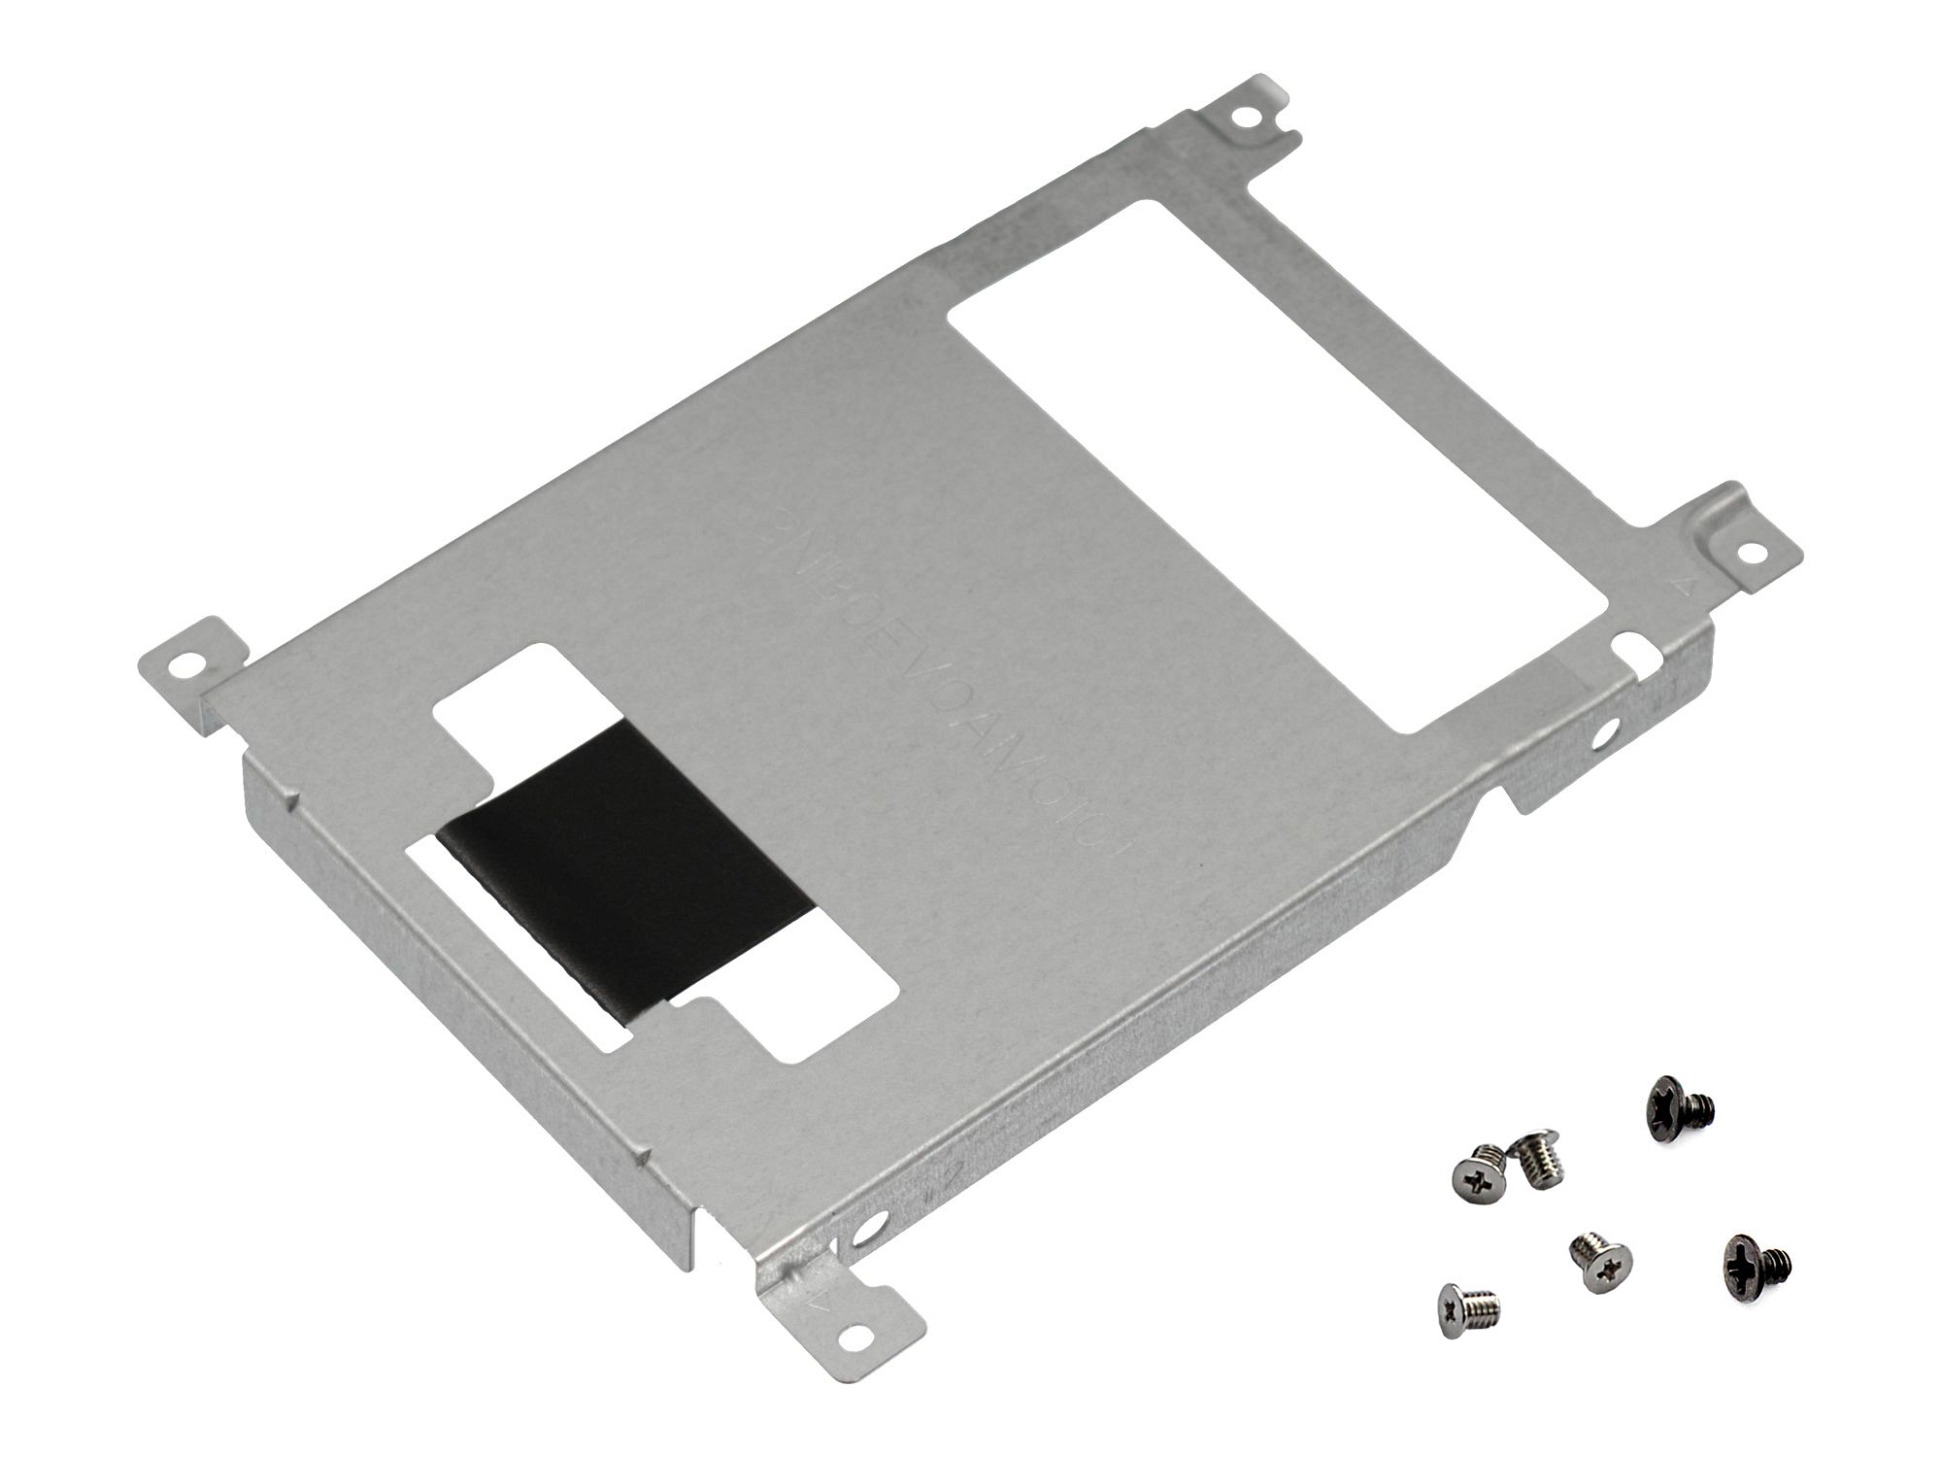 Festplatten-Einbaurahmen für den 1. Festplatten Schacht inkl. Schrauben Original für Asus VivoBook Pro 17 N705FN